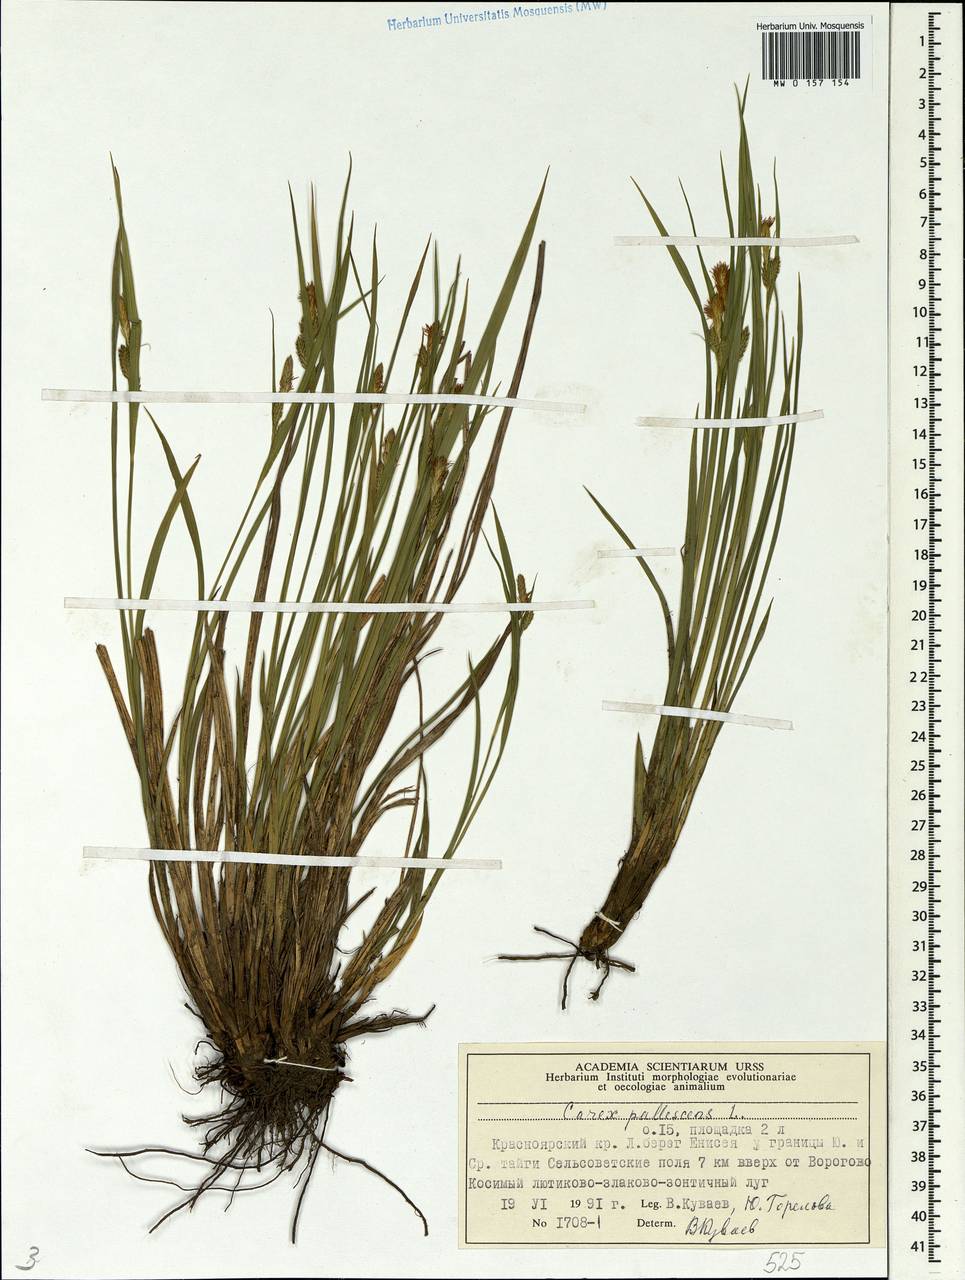 Carex pallescens L., Siberia, Central Siberia (S3) (Russia)